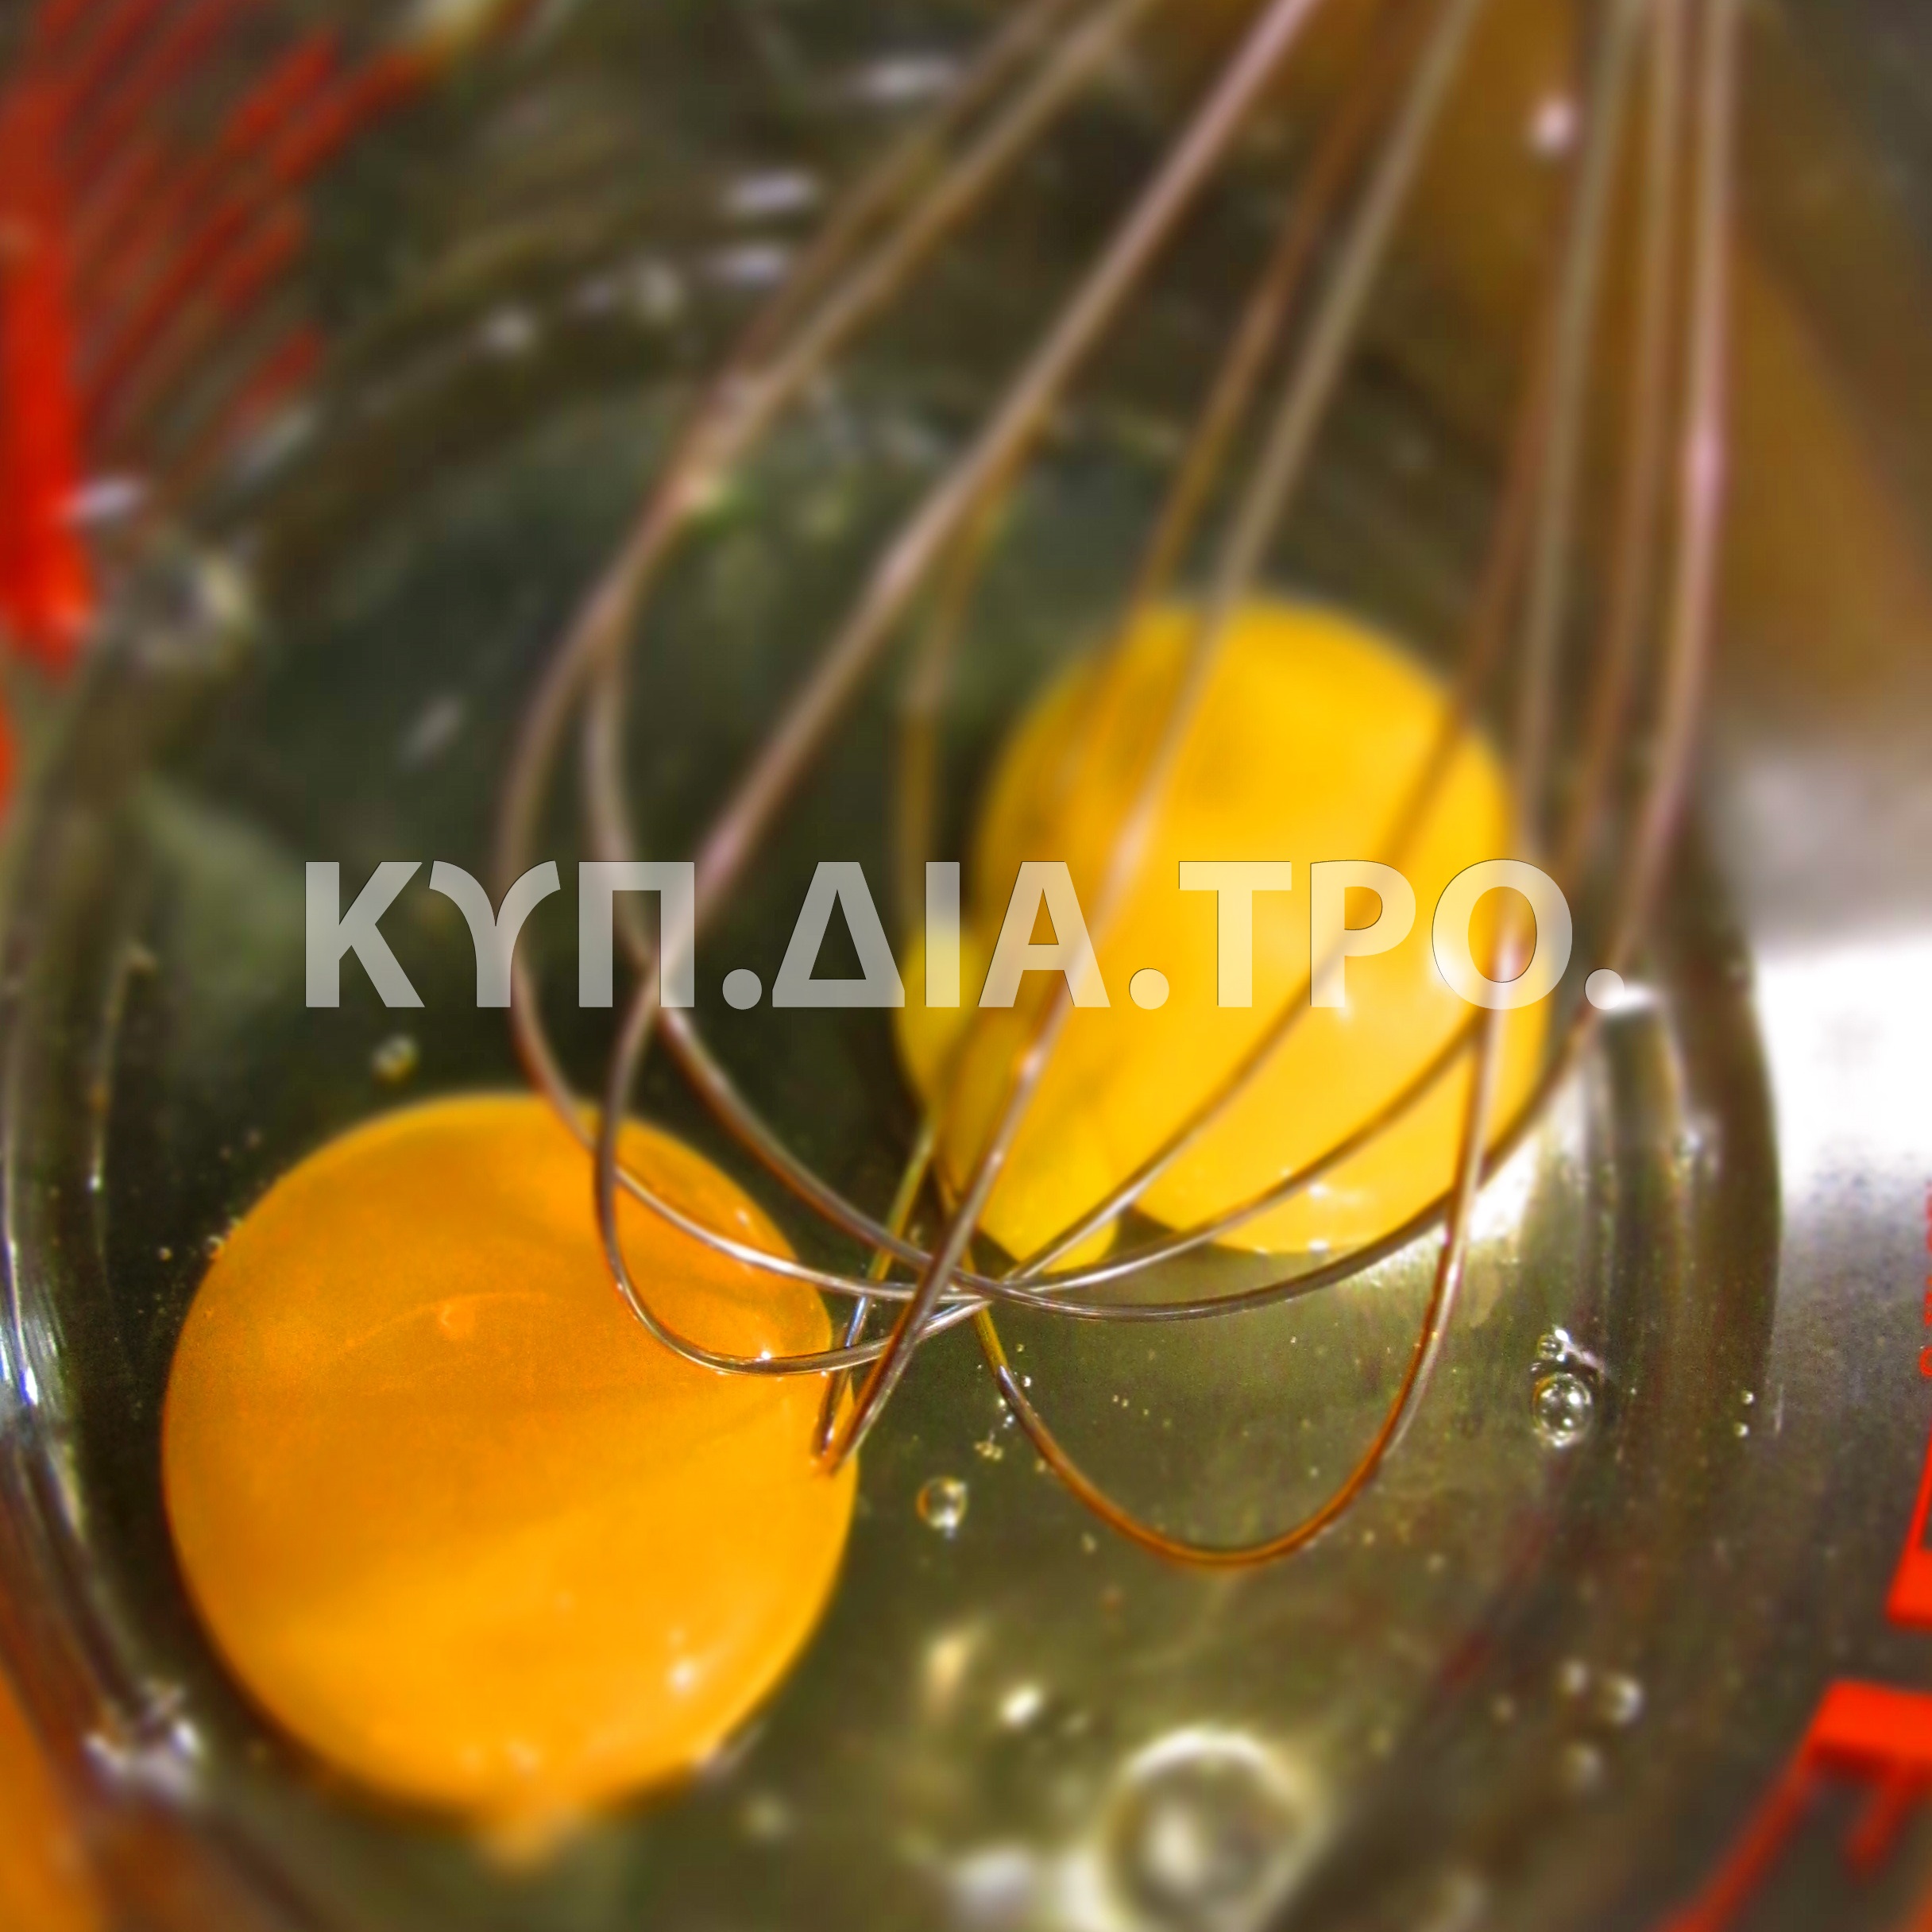 Αυγά, βασικό υλικό της συνταγής. <br/> https://www.flickr.com/photos/kirstenloza/4815745537/